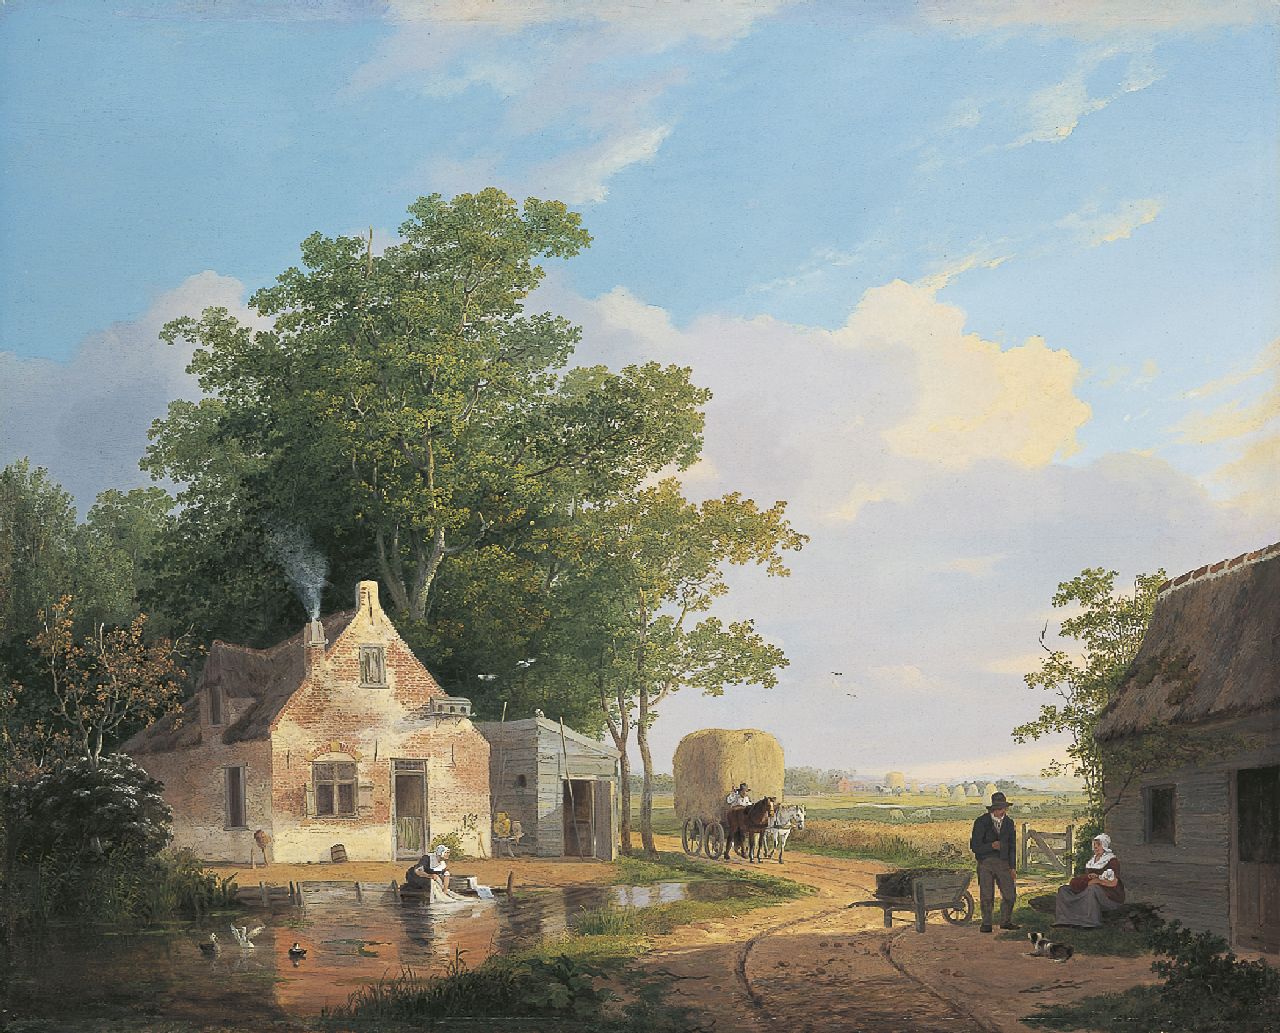 Stok J. van der | Jacobus van der Stok, Plattelandsidylle, olieverf op paneel 56,5 x 70,0 cm, gesigneerd rechts van het midden